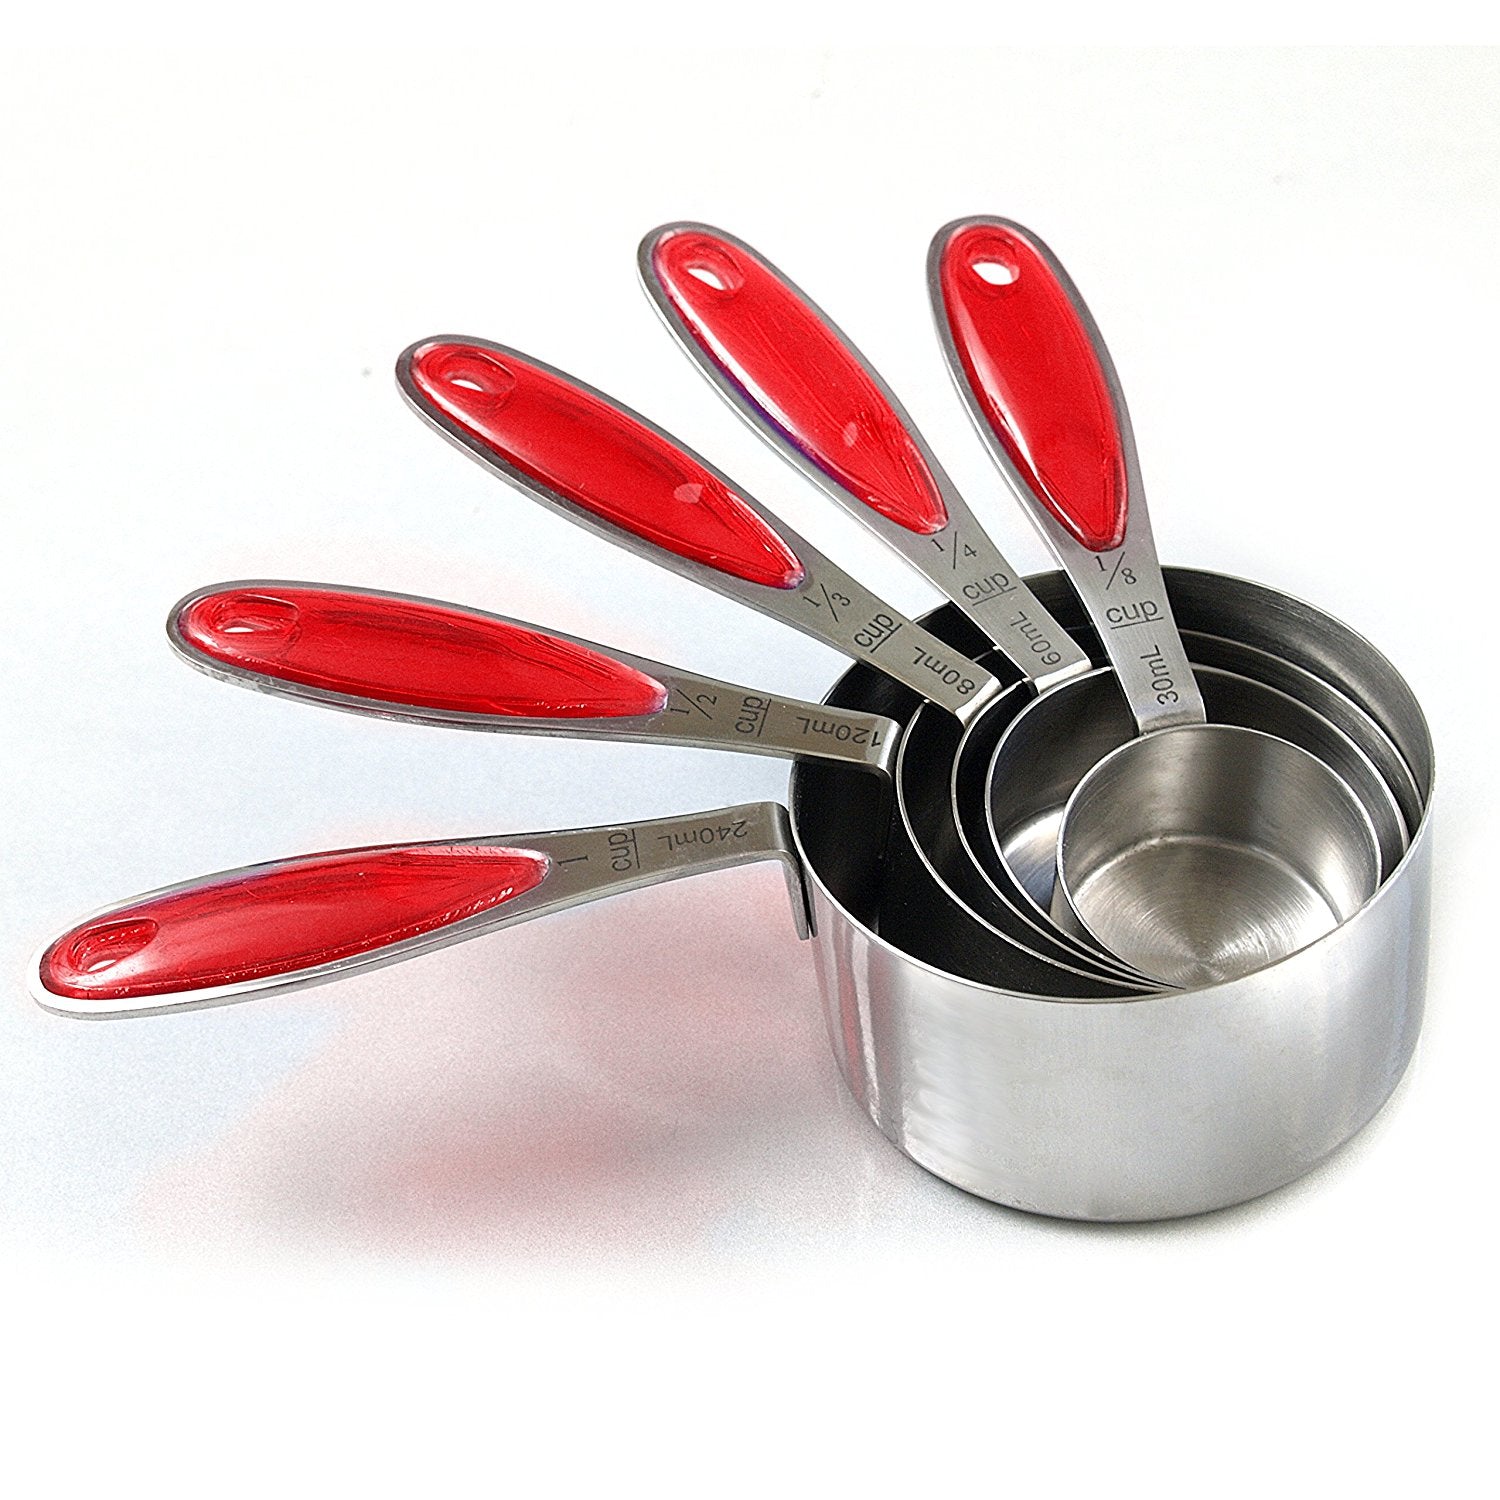 RSVP 1/4 tsp Measuring Spoon - Cooks